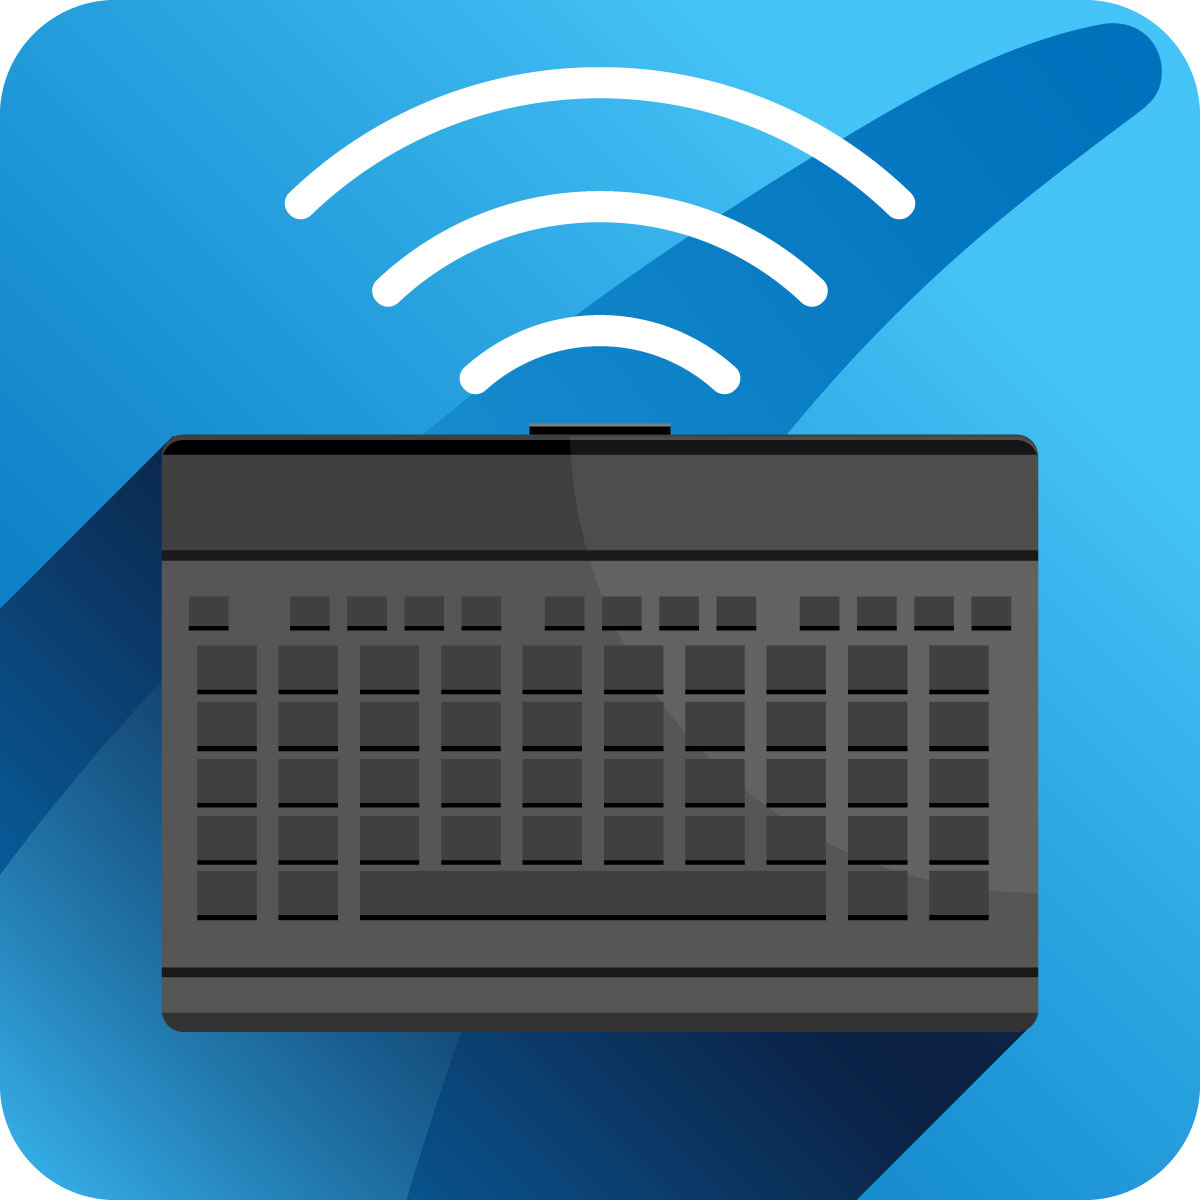 Bluetooth-Tastatur